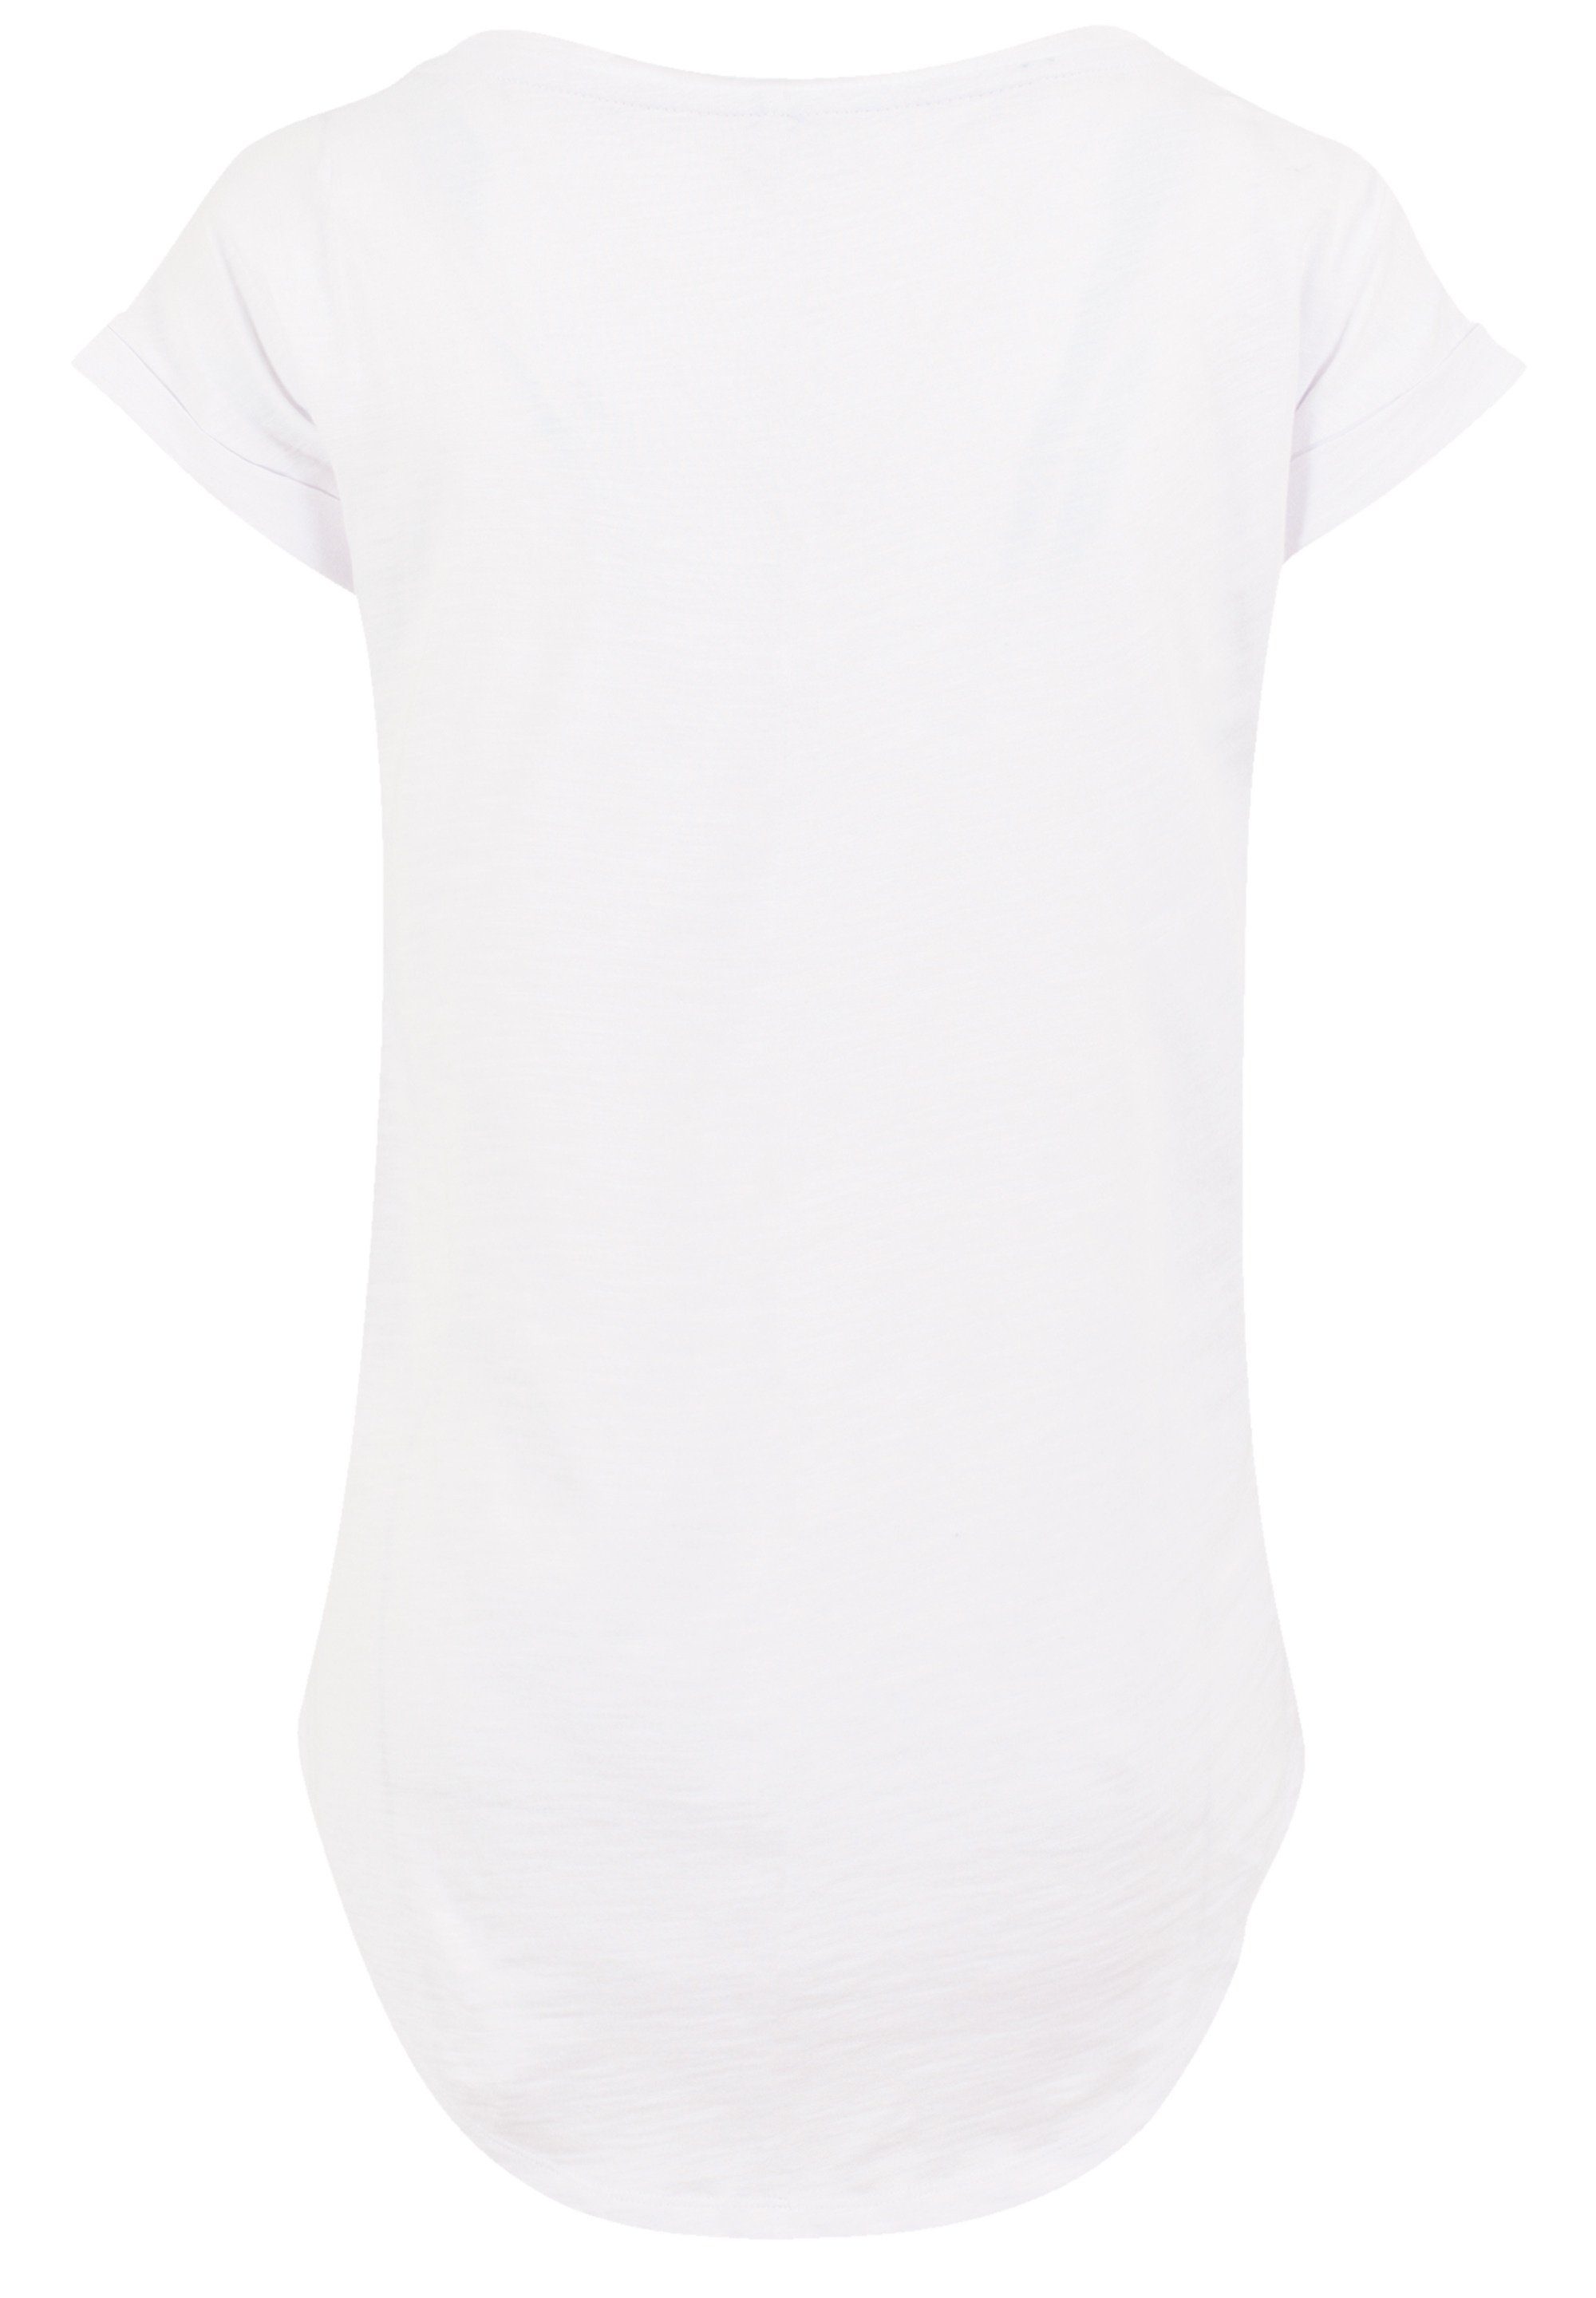 F4NT4STIC T-Shirt Disney König der Löwen Together white Premium Qualität,  Sehr weicher Baumwollstoff mit hohem Tragekomfort